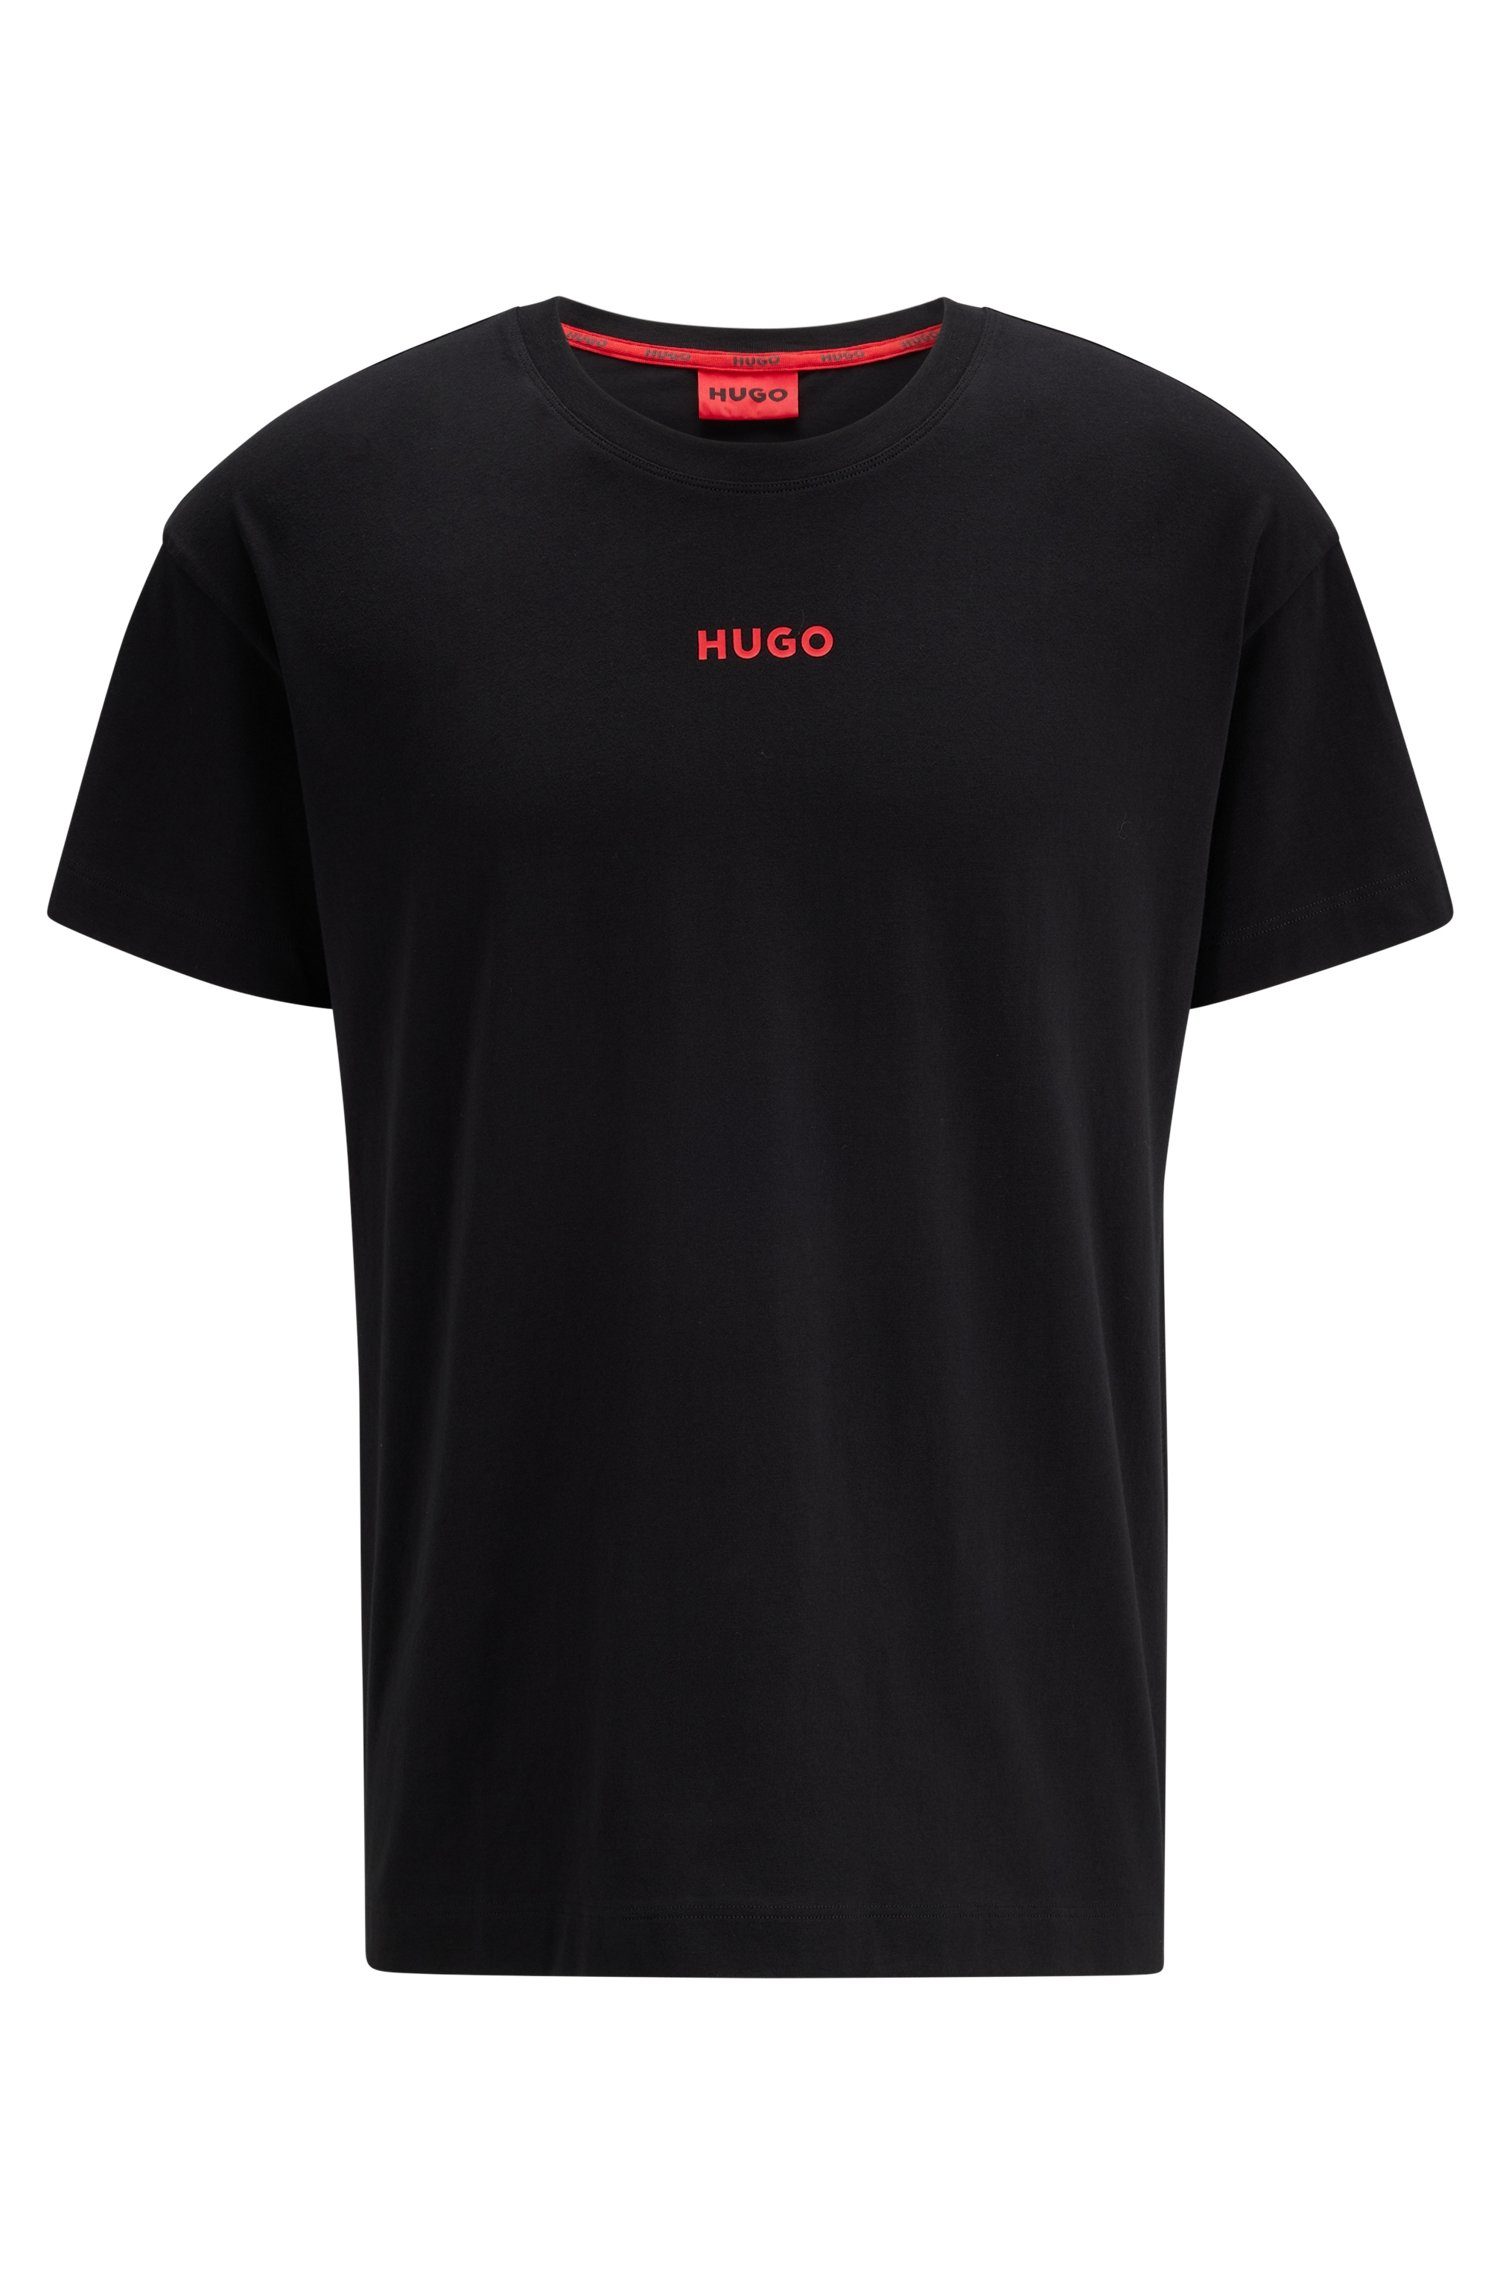 black T-Shirt Linked 001 Brust Logo-Schriftzug der Rundhalsshirt Hugo auf HUGO mit